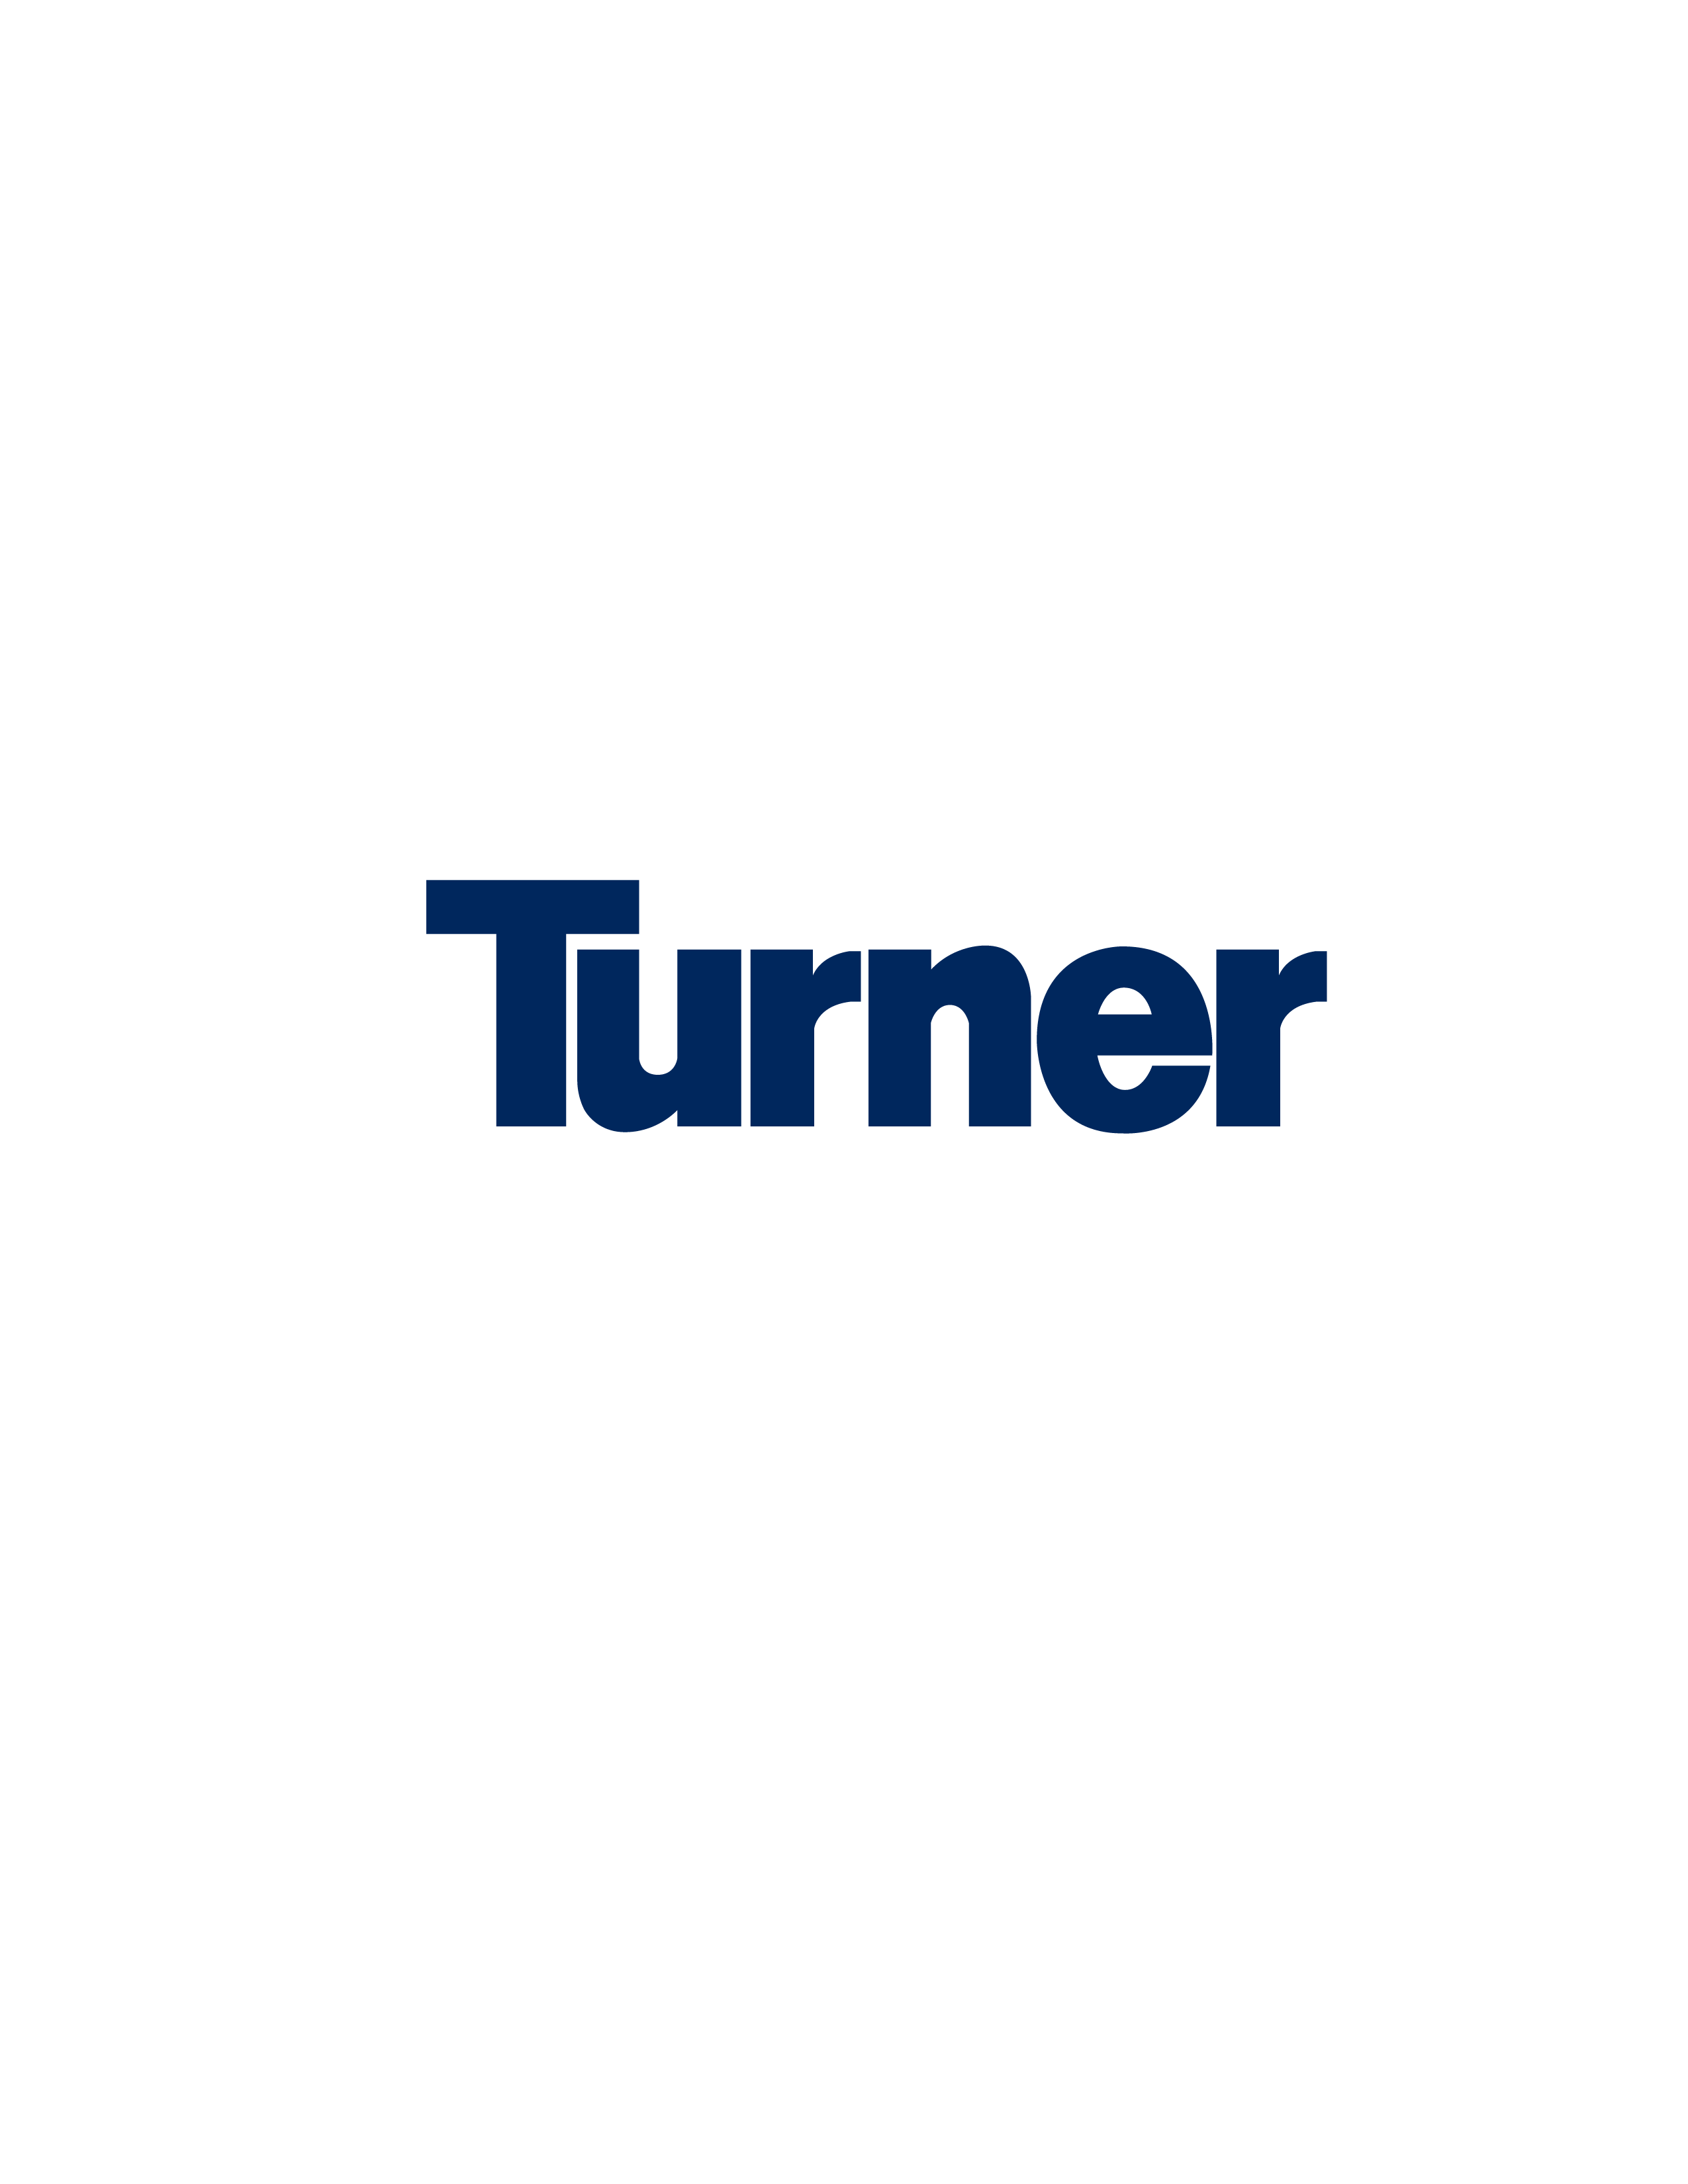 Turner Construction Company Company Logo